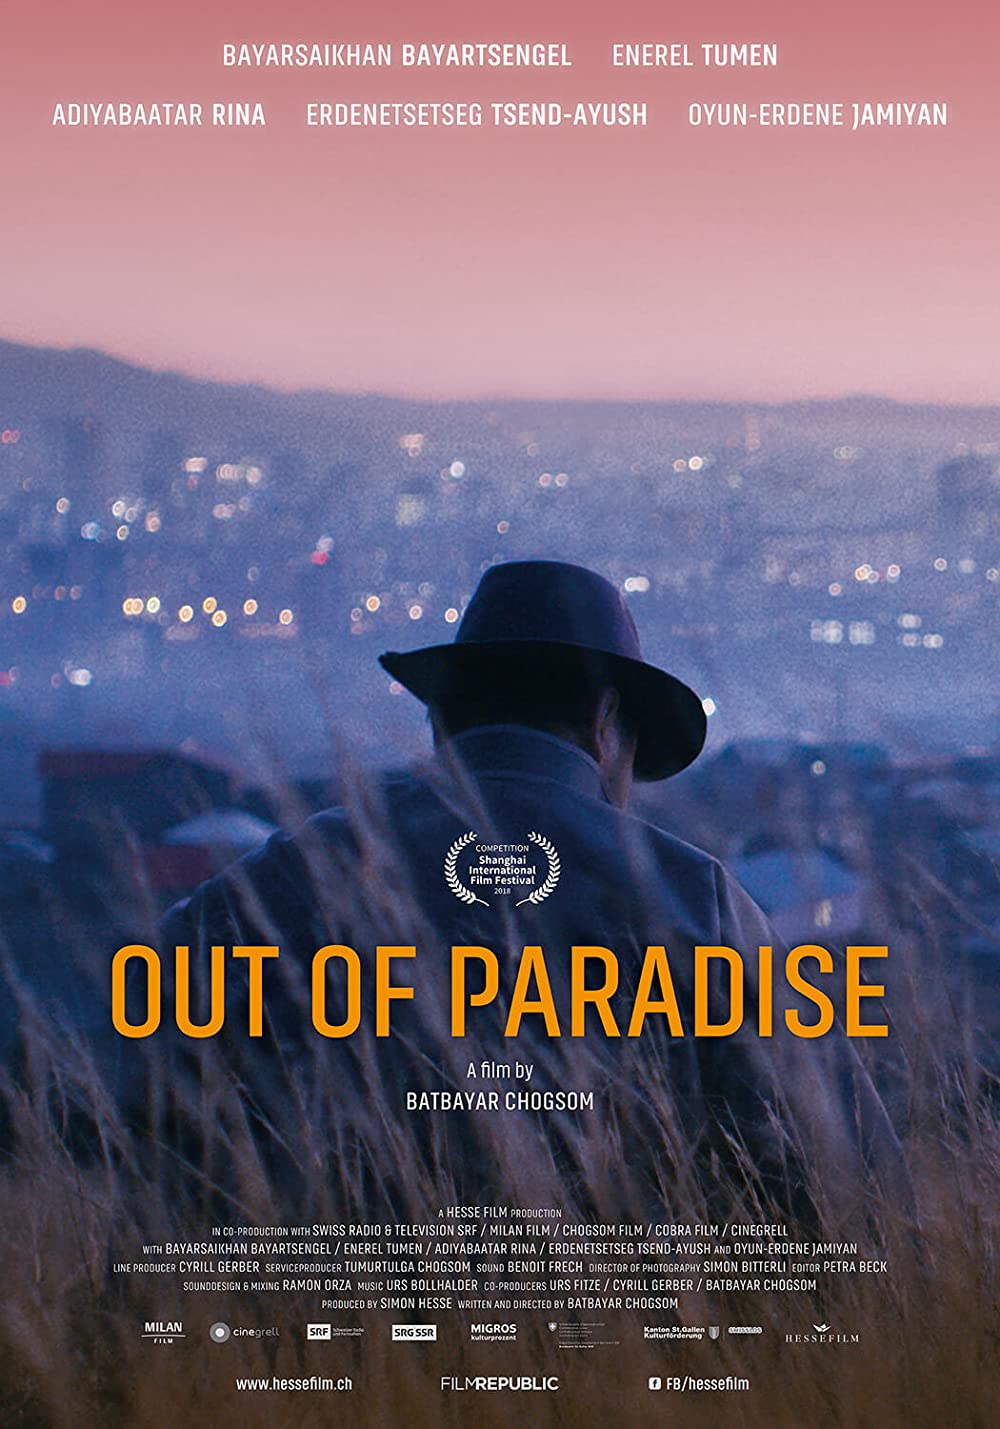 Filmbeschreibung zu Out of Paradise (OV)